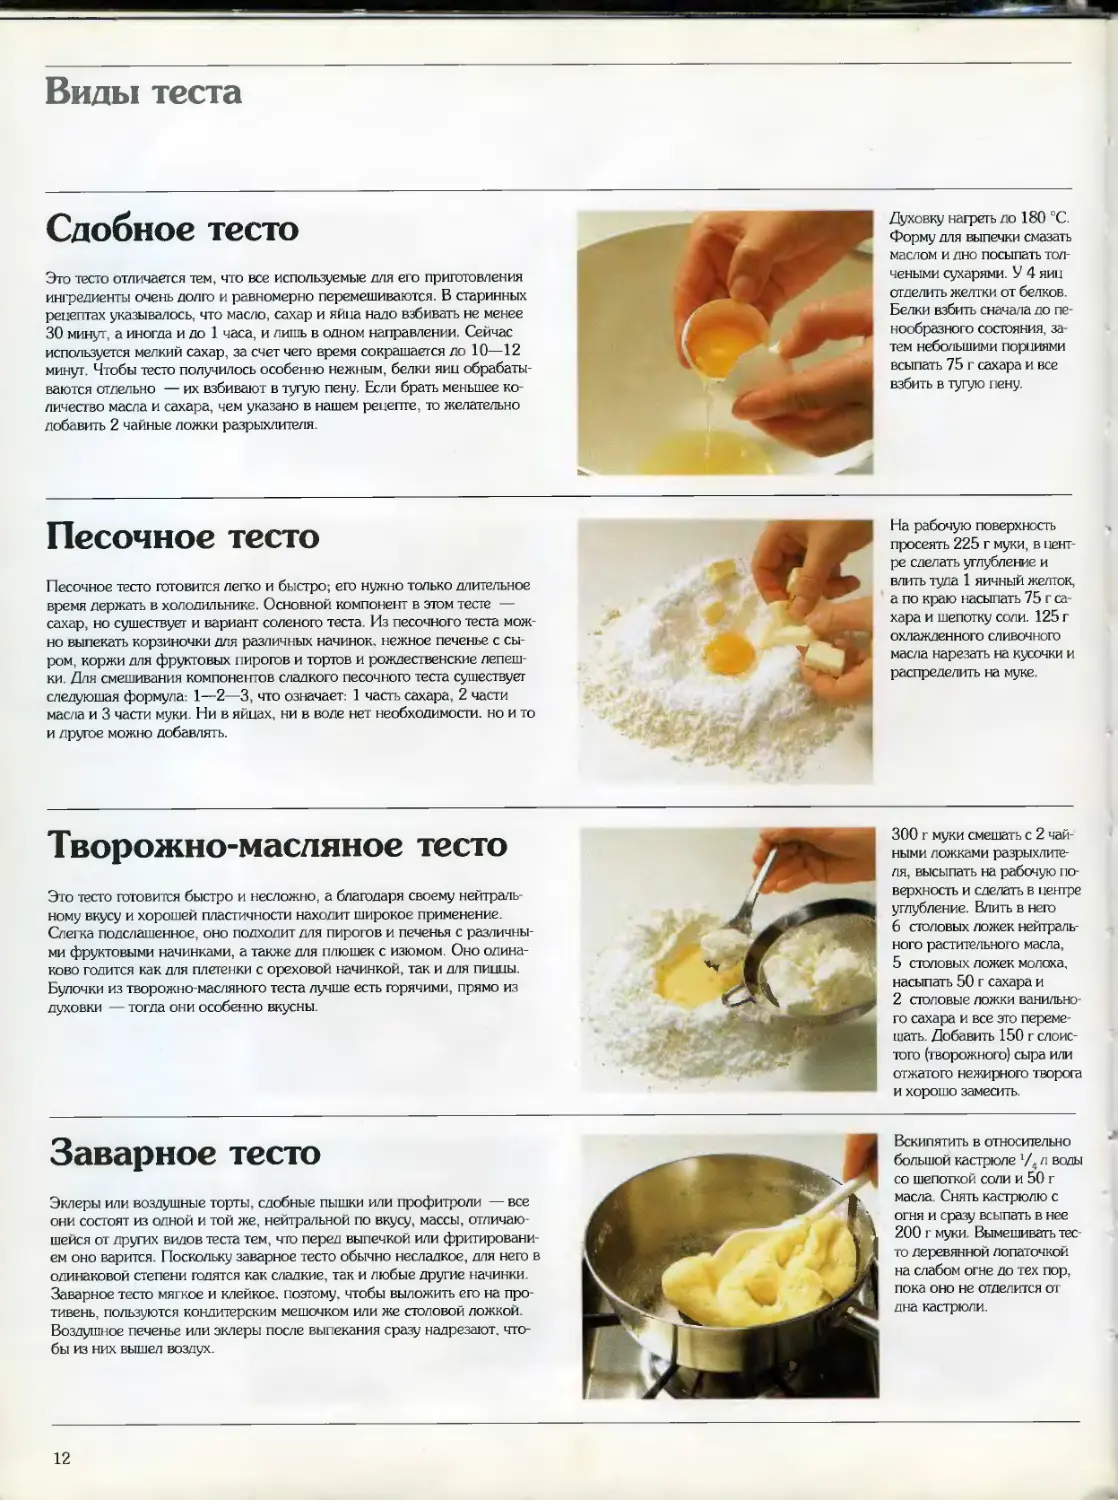 Рецепт приготовления теста для пирога